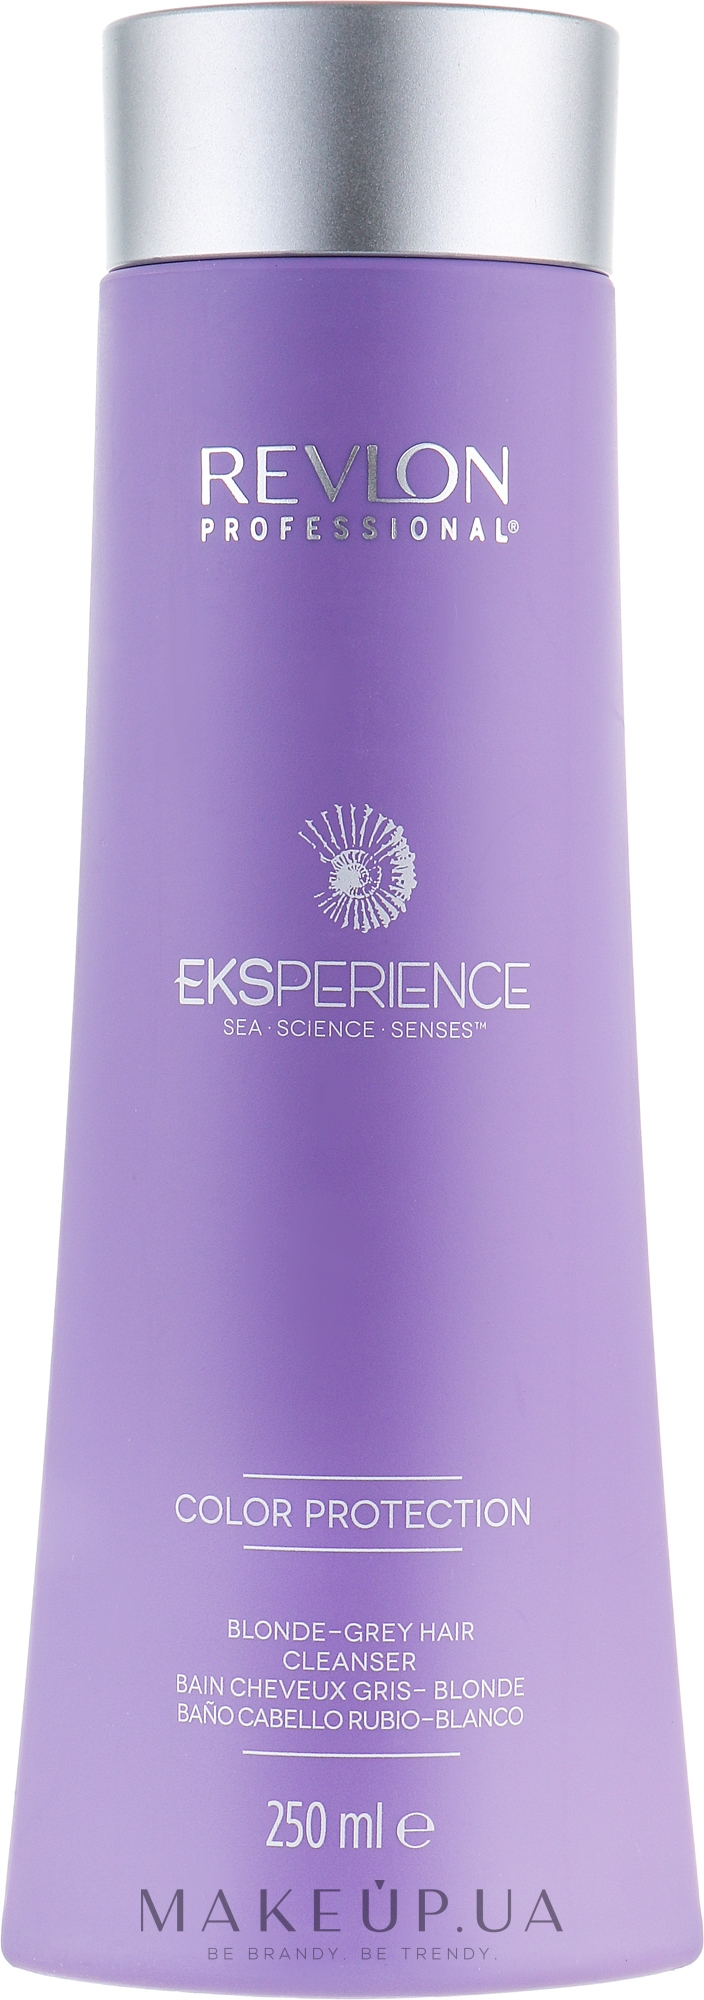 Шампунь для світлого і сивого волосся - Revlon Professional Eksperience Color Protection Shampoo — фото 250ml